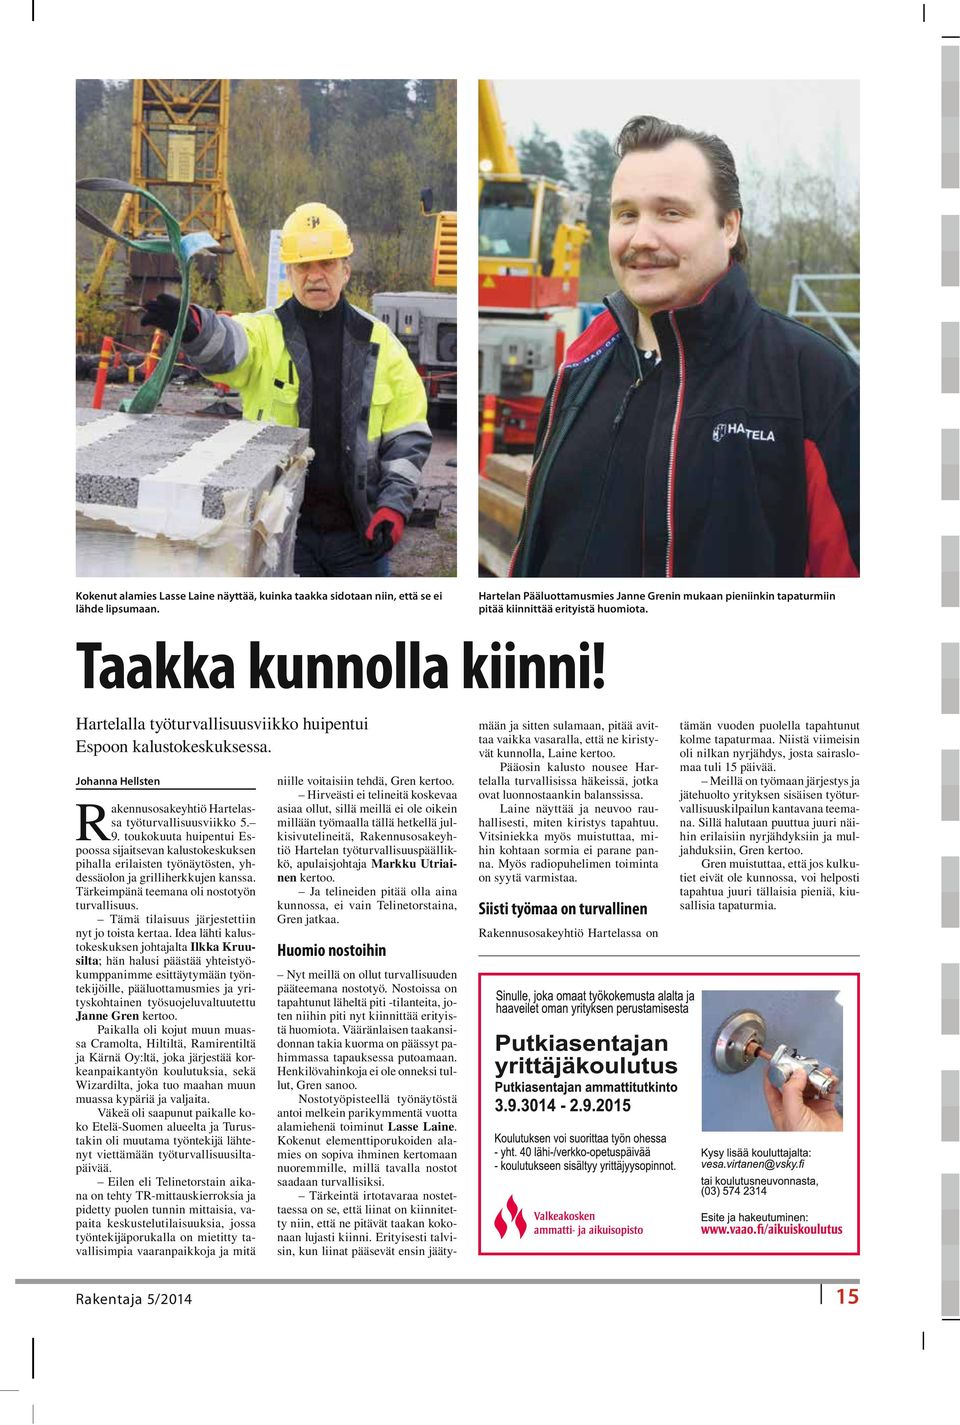 toukokuuta huipentui Espoossa sijaitsevan kalustokeskuksen pihalla erilaisten työnäytösten, yhdessäolon ja grilliherkkujen kanssa. Tärkeimpänä teemana oli nostotyön turvallisuus.